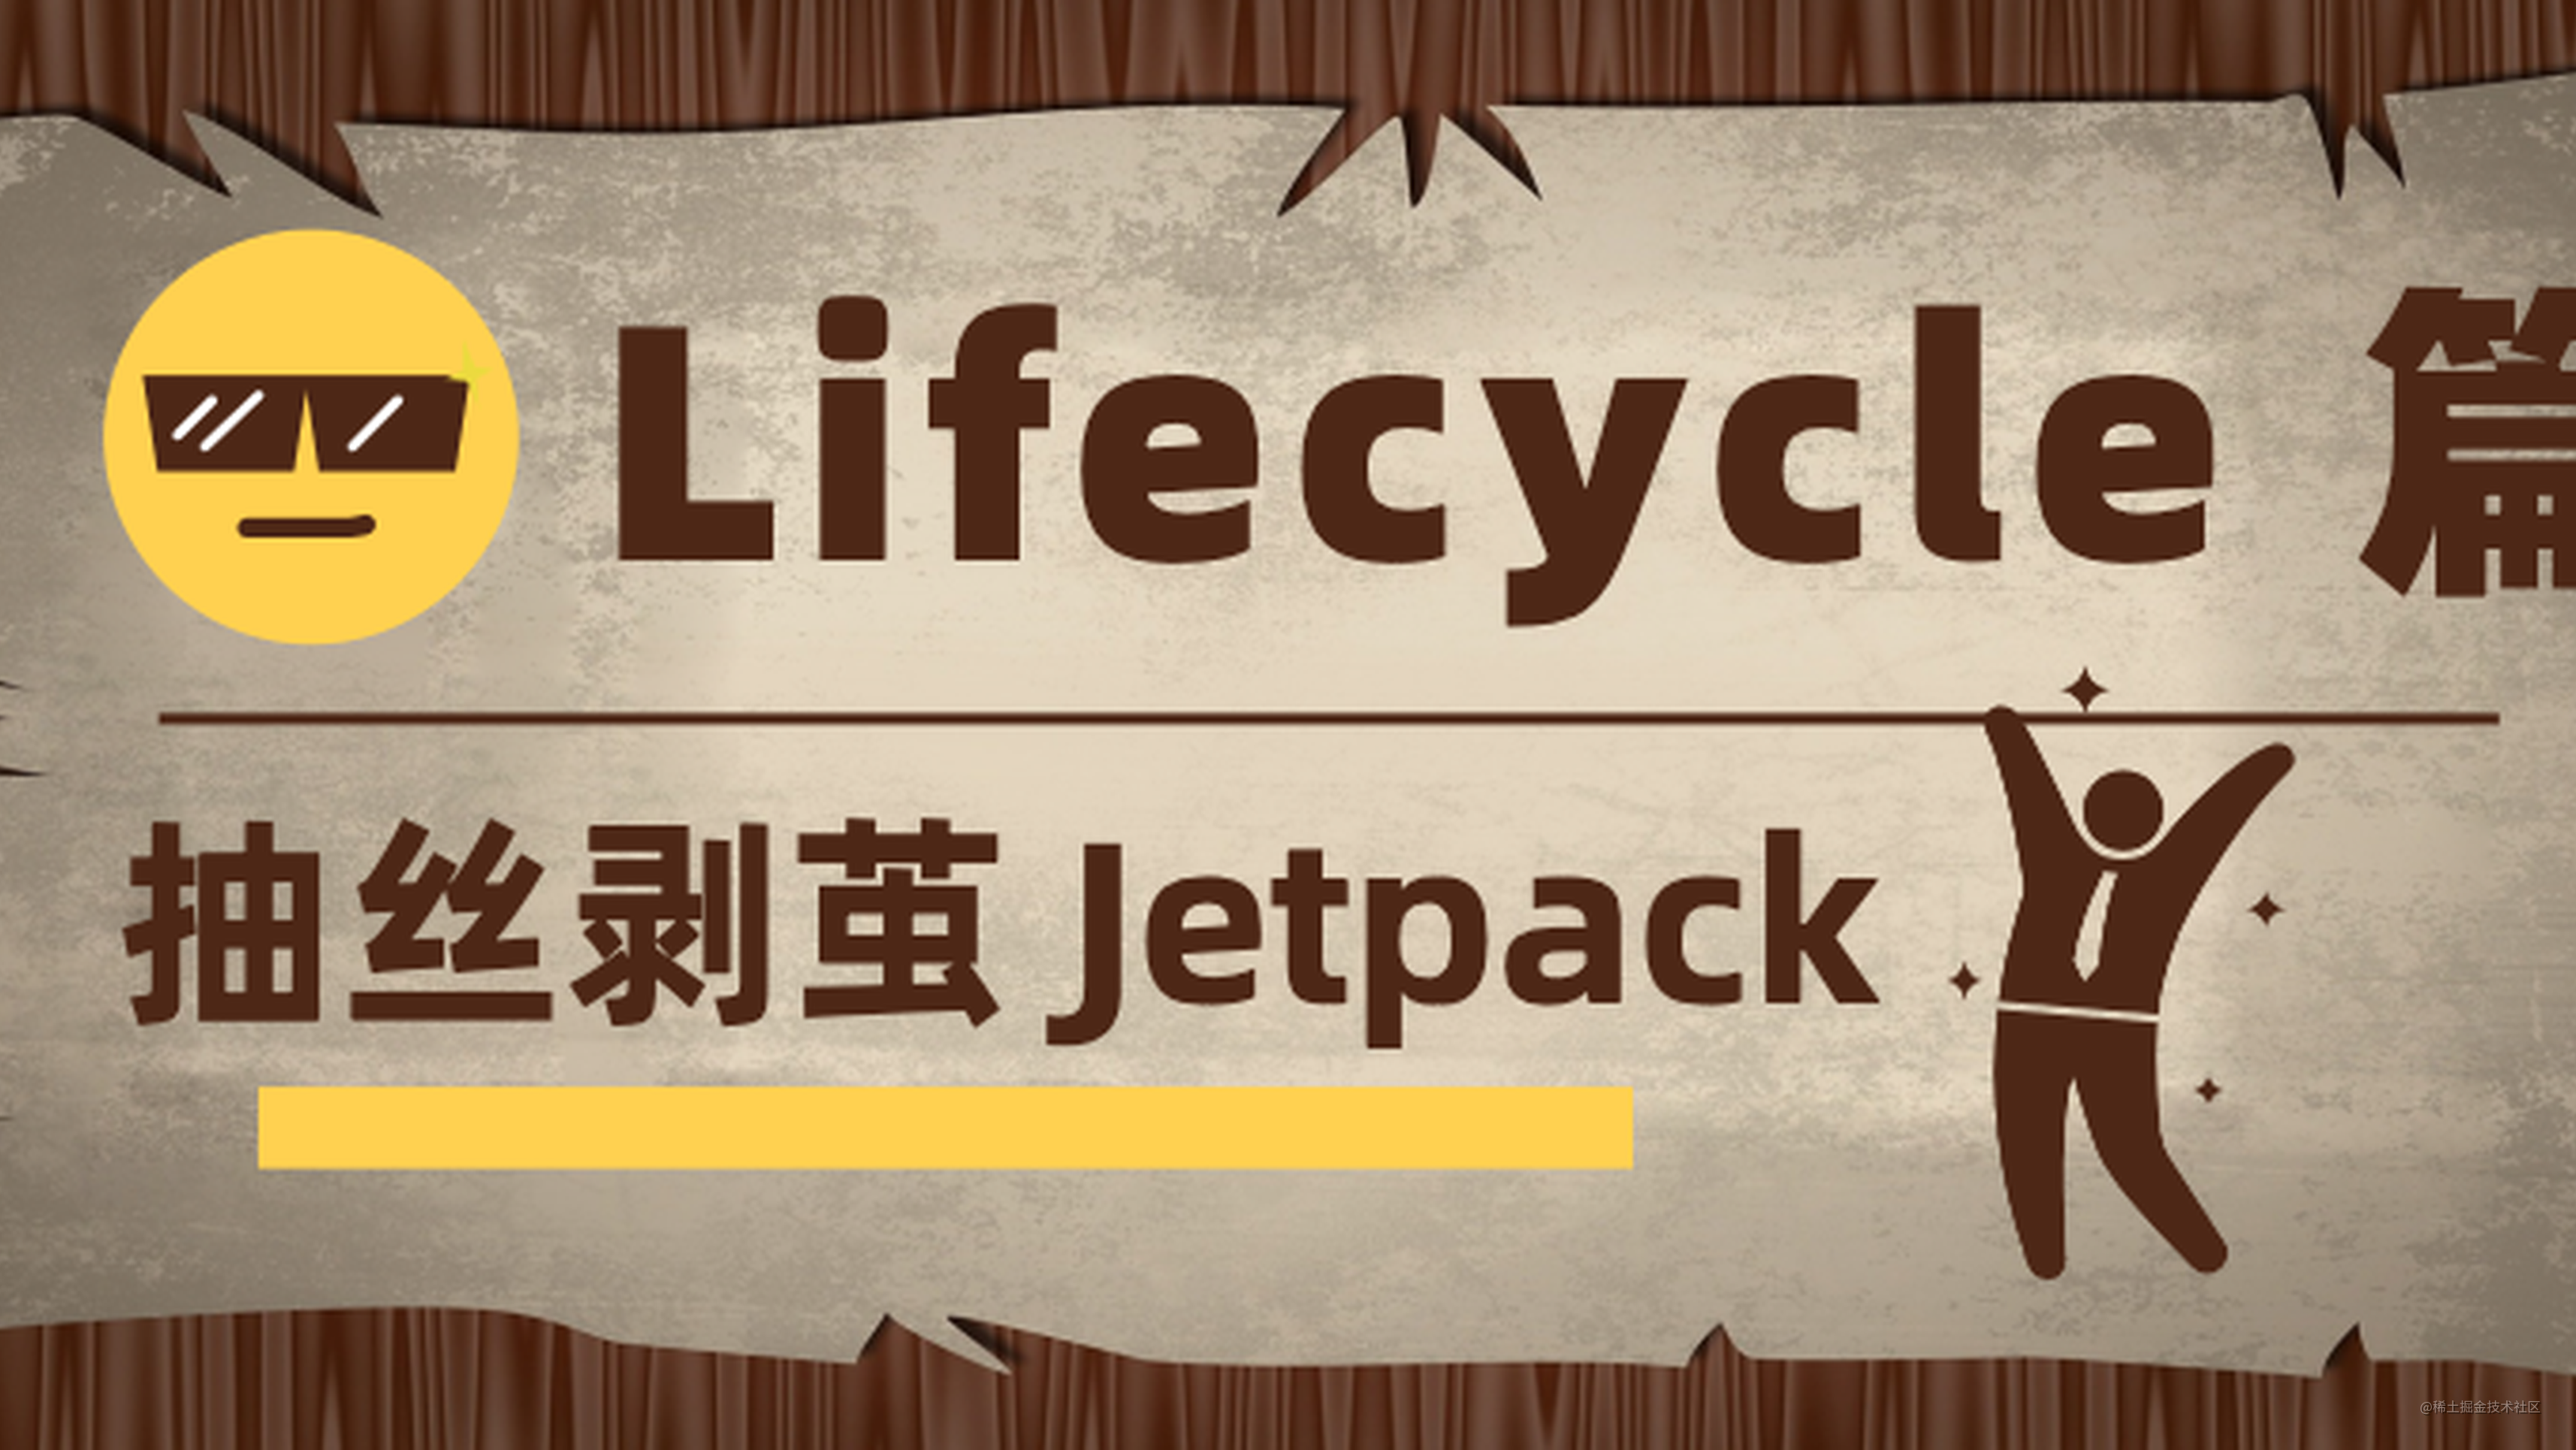 抽丝剥茧 Jetpack ｜ Lifecycle 到底解决了什么问题？